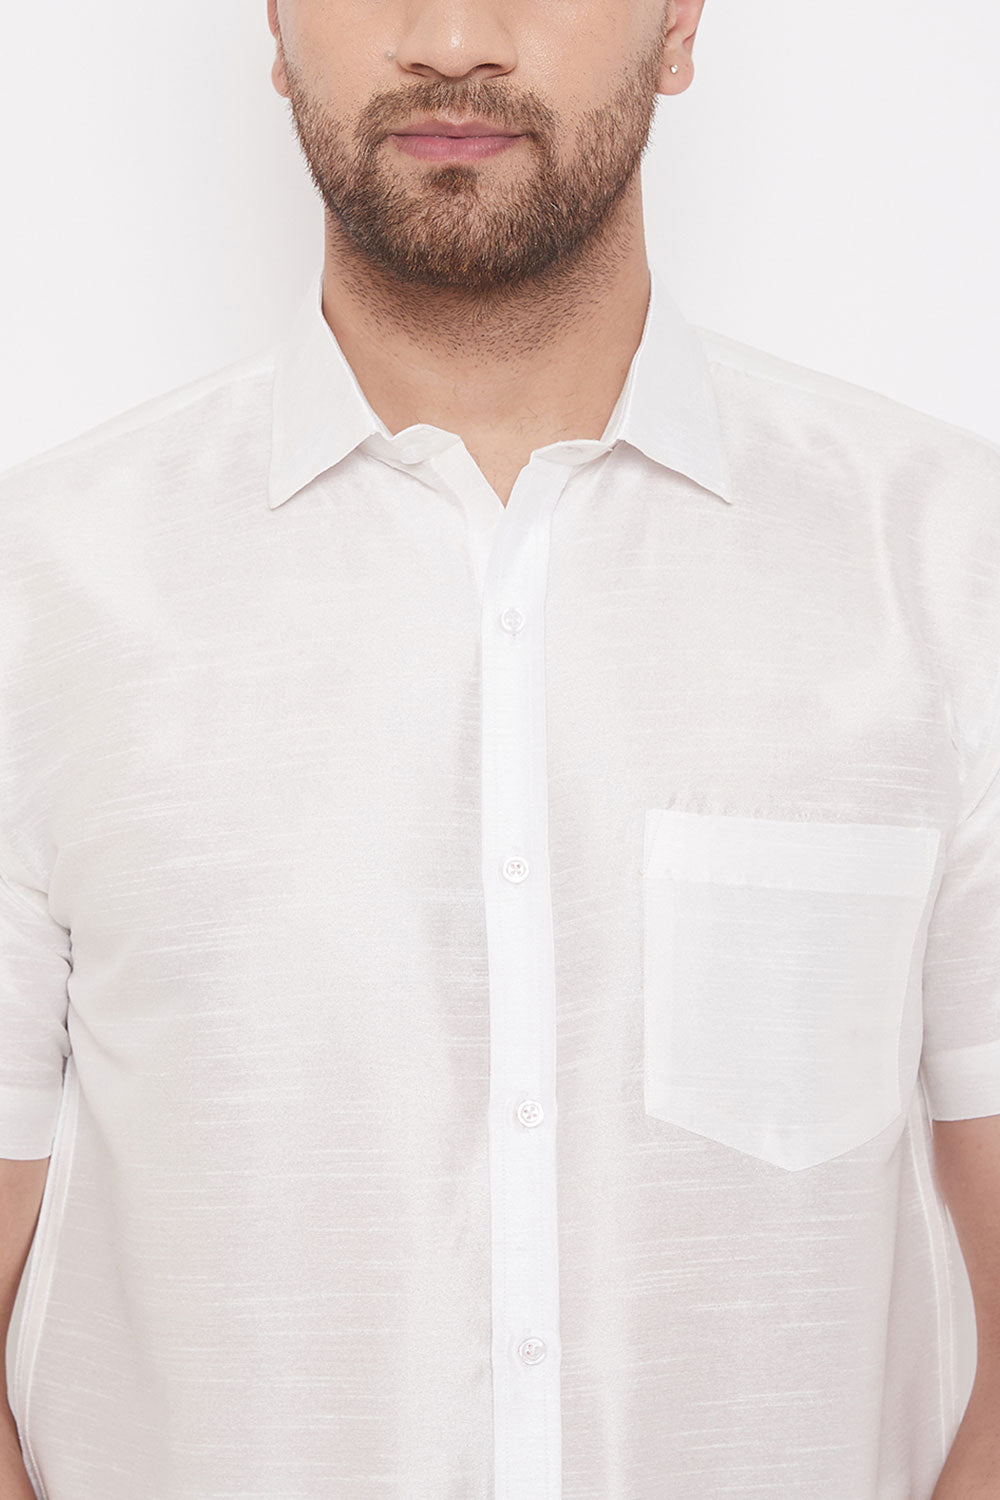 Designer Art Silk White Shirt and Lungi